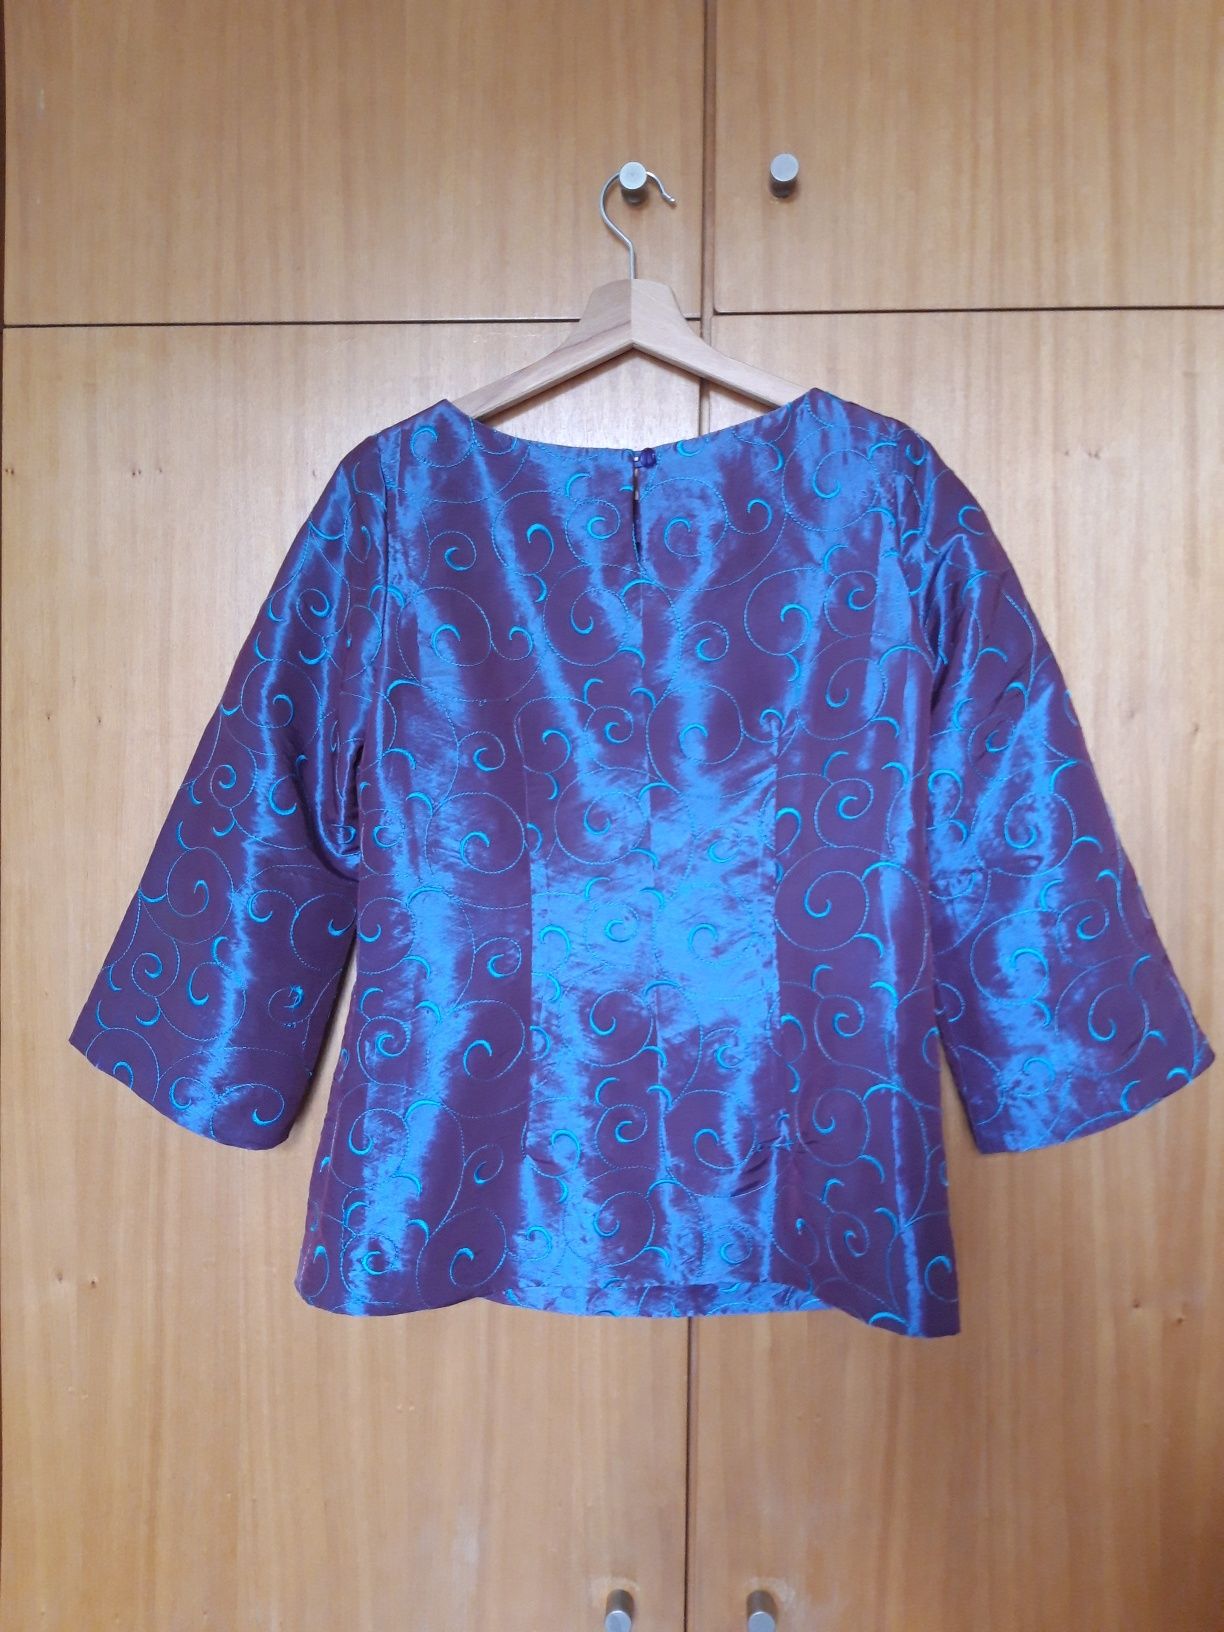 Deslumbrante blusa de festa de cor lilás c/ padrões azuis (M)